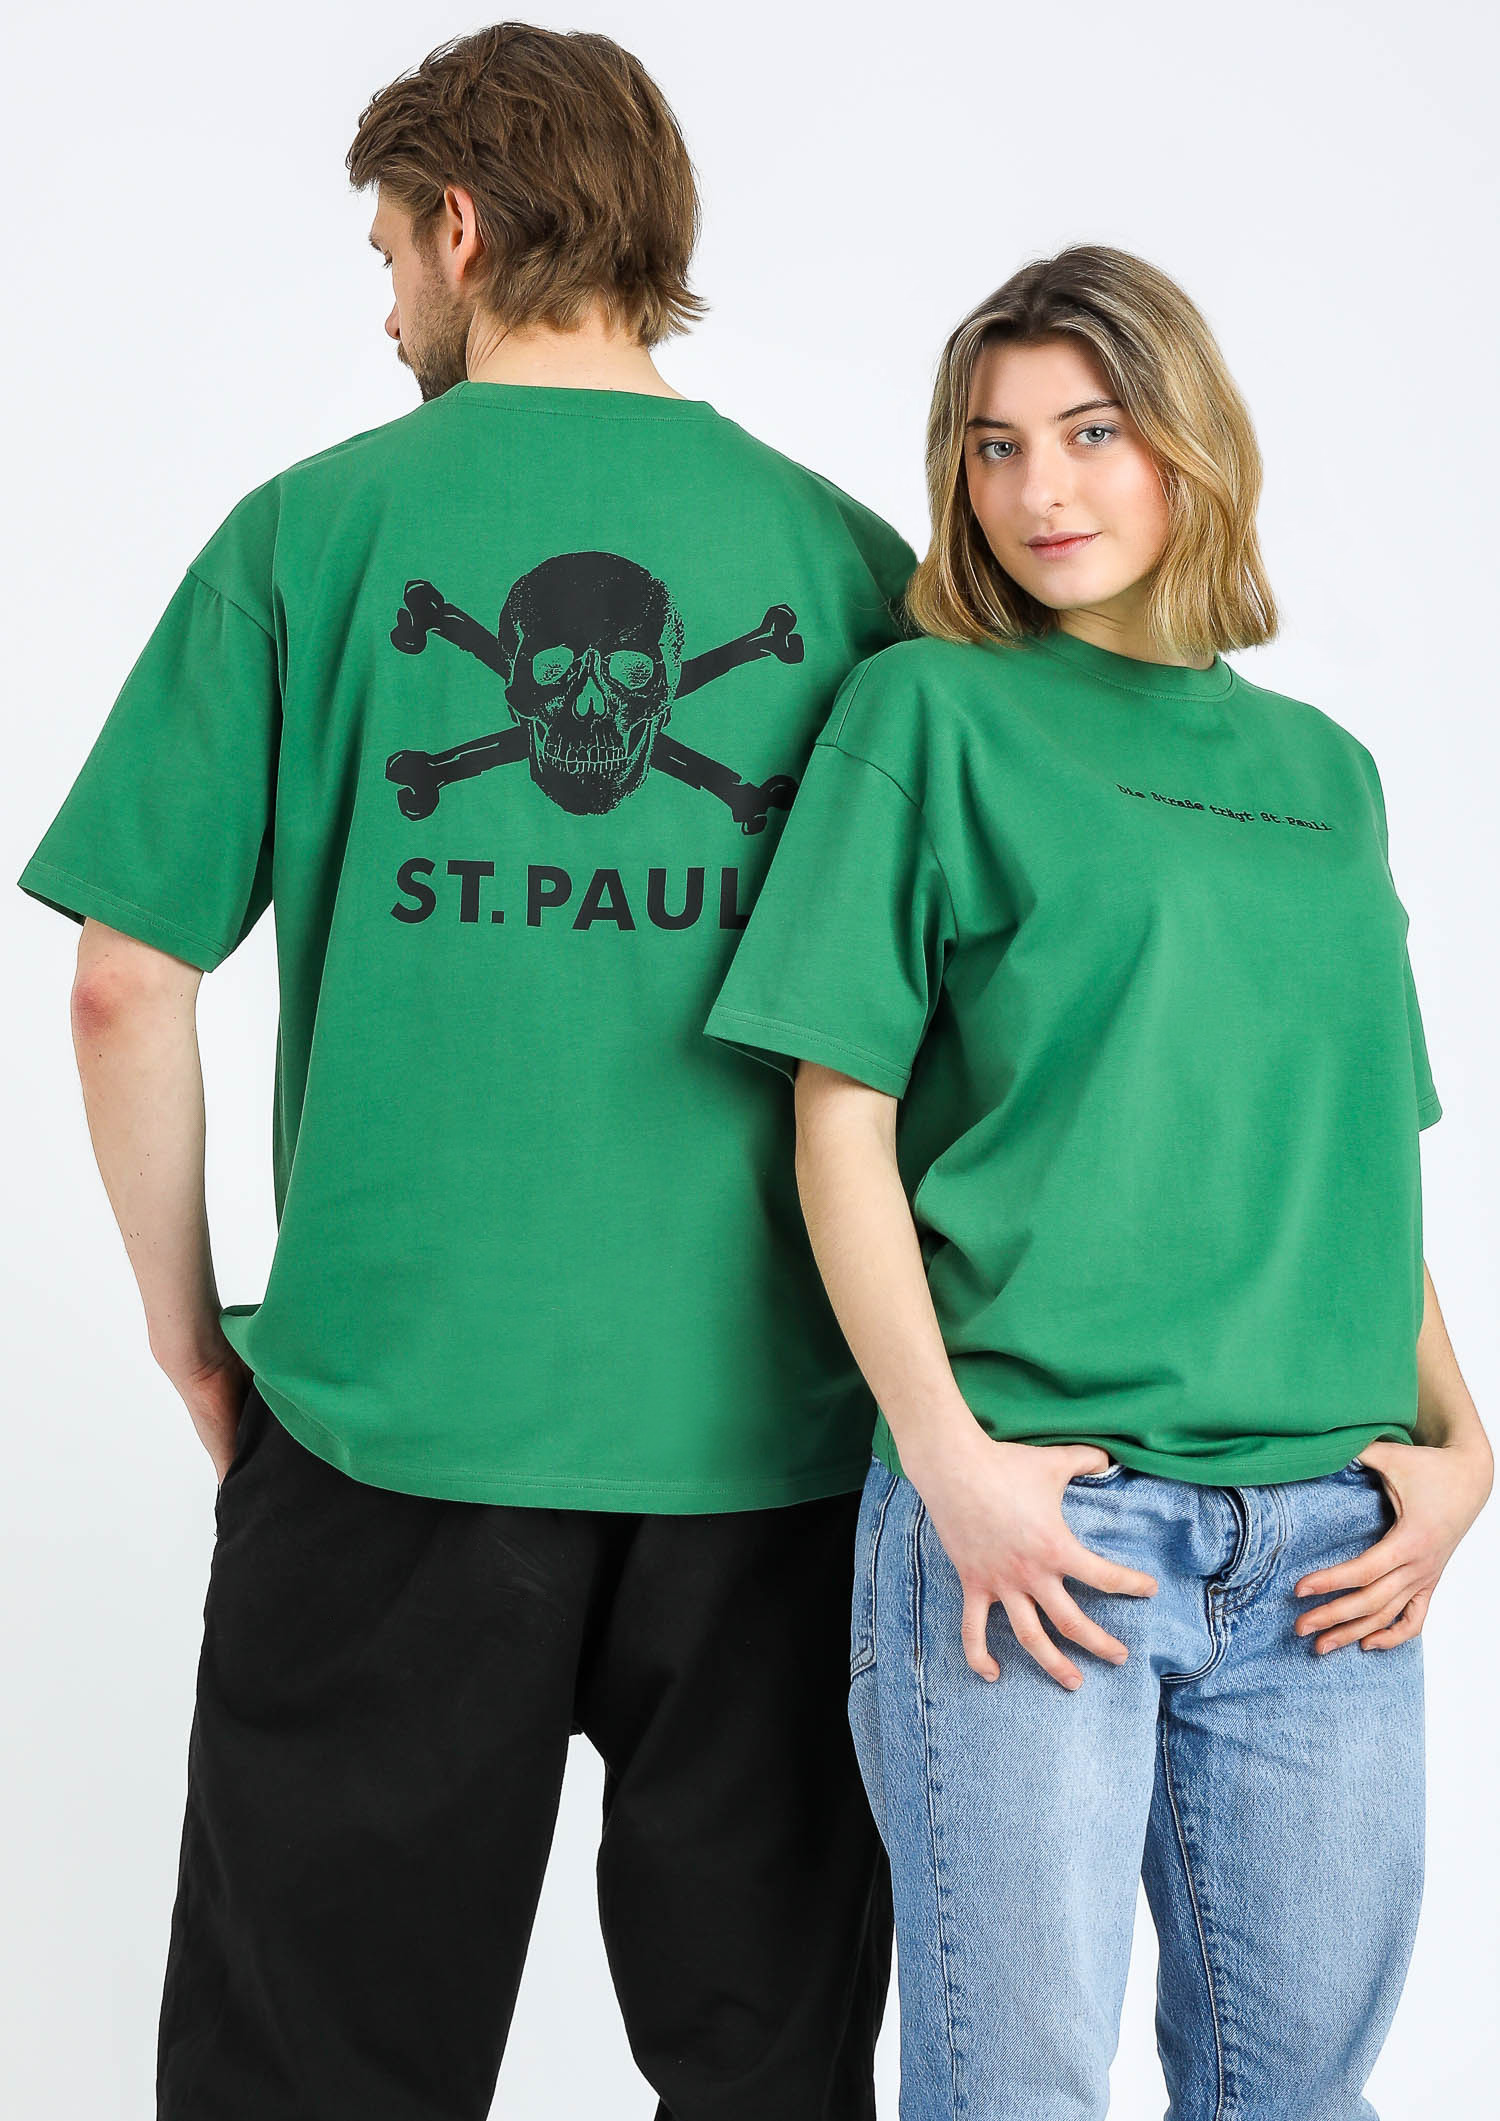 T-Shirt "Die Strasse trägt" - grün